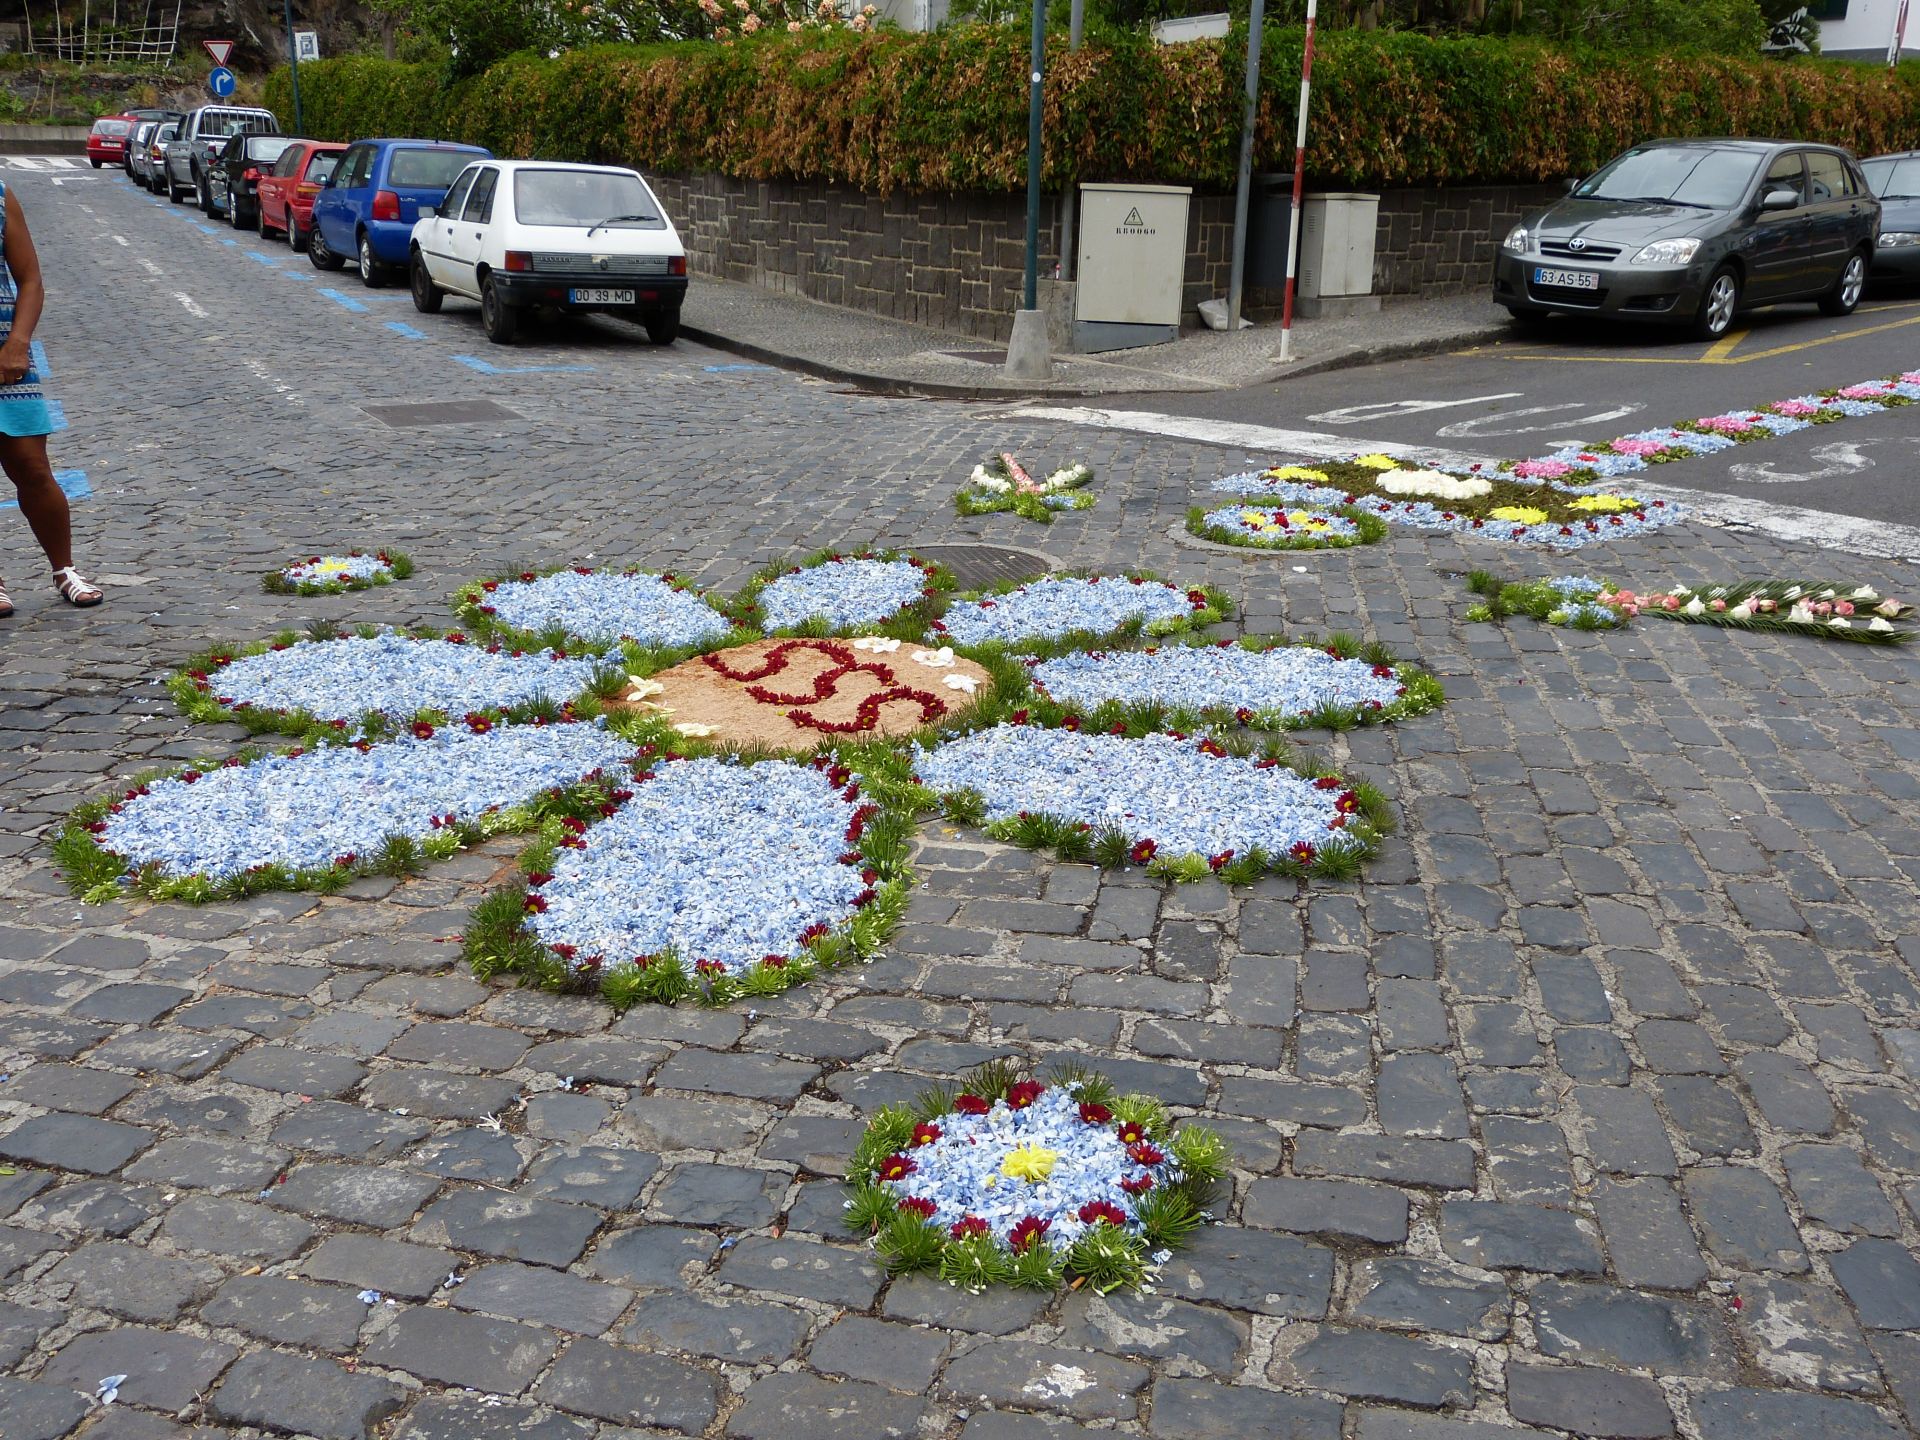 Blumenfest in Ribeira Brava